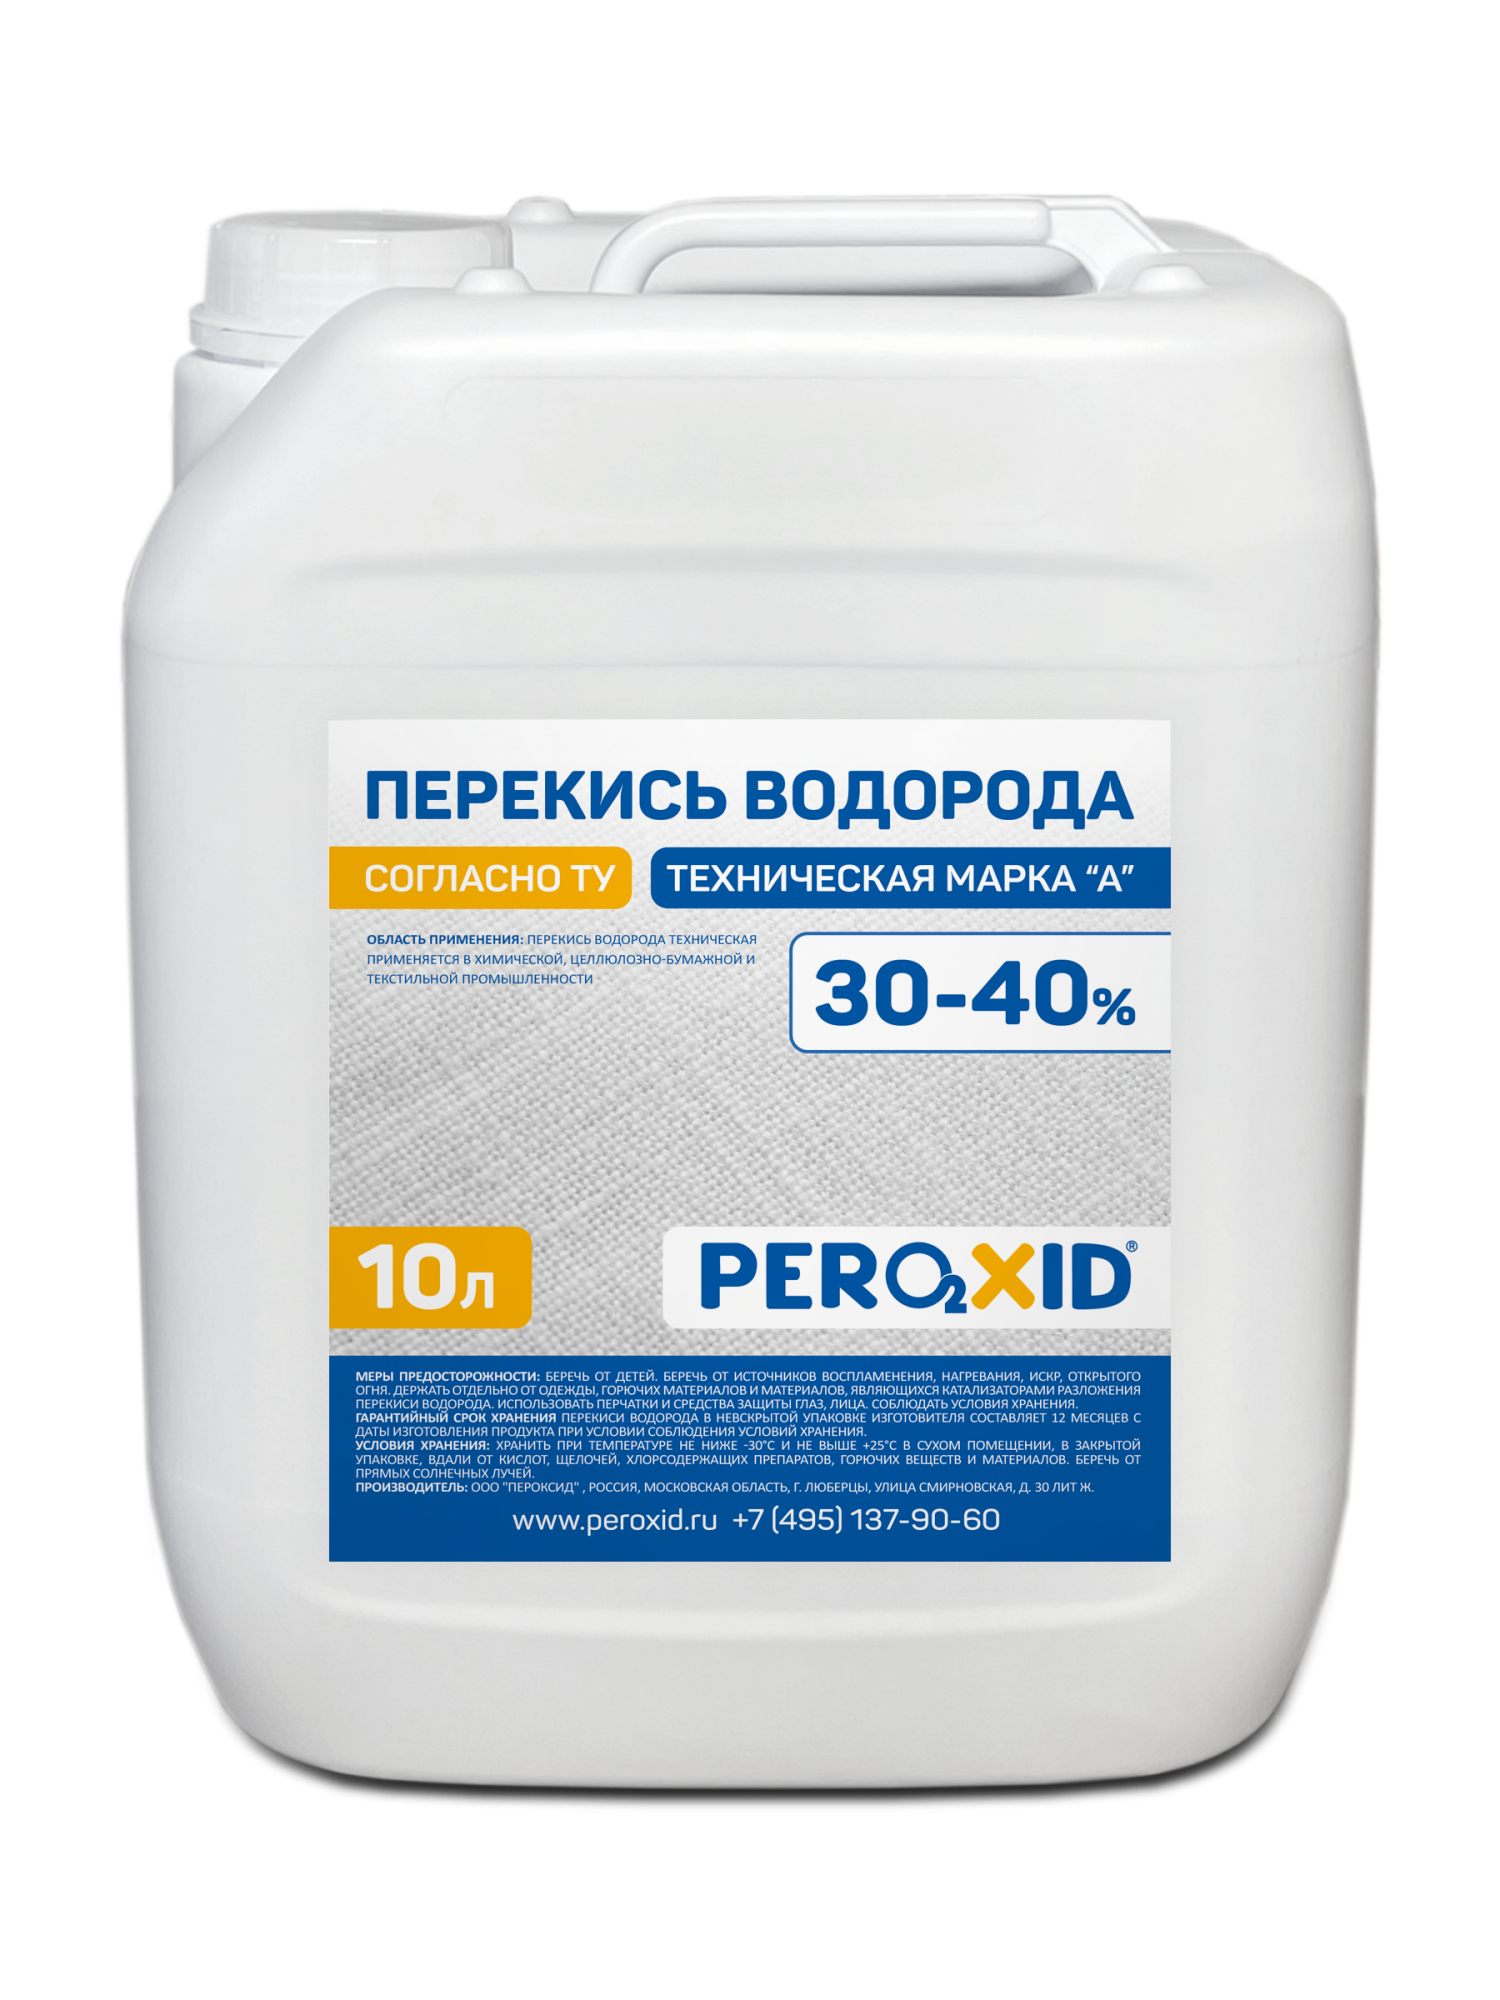 Перекись водорода техническая PEROXID 30-40% марка А ТУ 2123-002-25665344-2008 10 л/12 кг